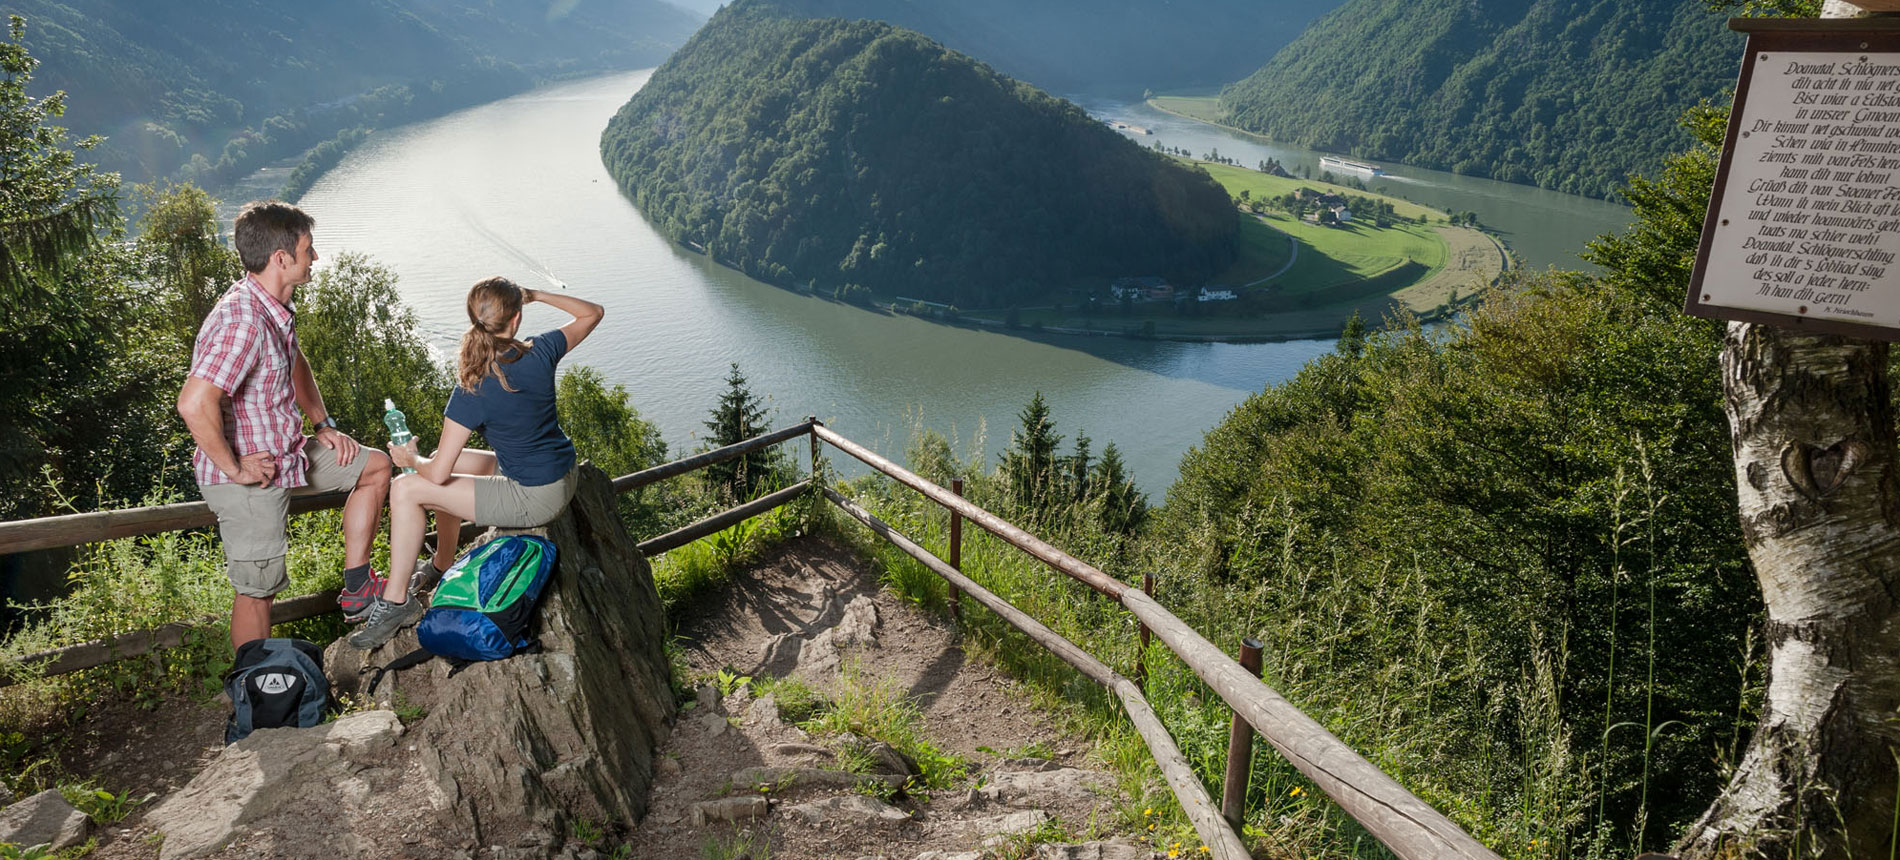 La fotografia mostra due turisti che, durante una passeggiata in montagna, si fermano ad ammirare, dall'alto, l'ansa di un fiume.